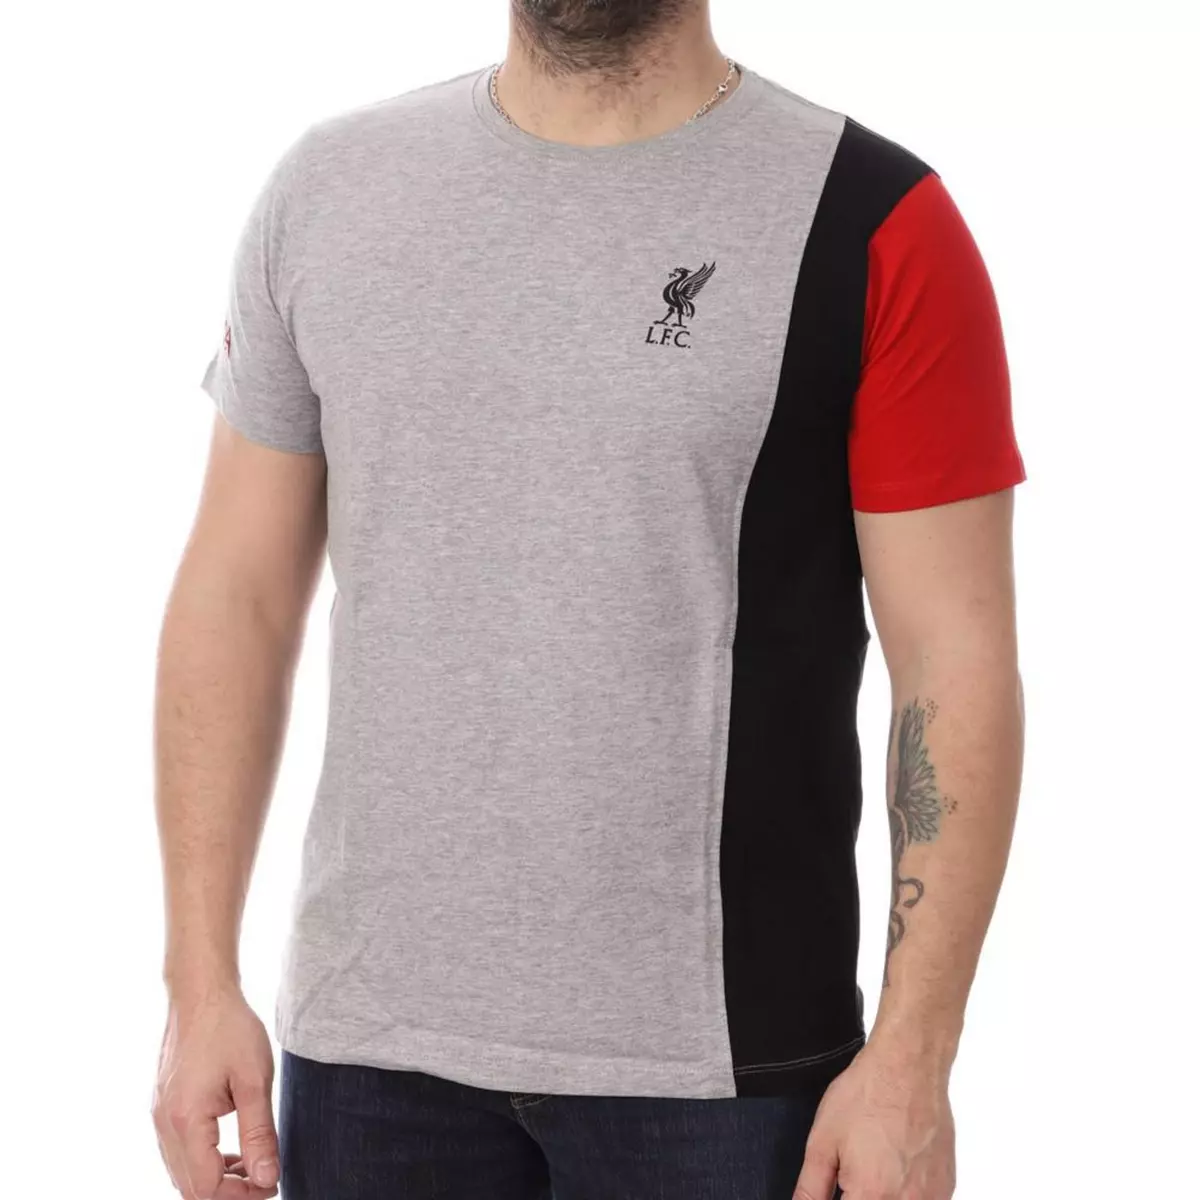  Liverpool T-shirt Gris/Noir Homme Roli